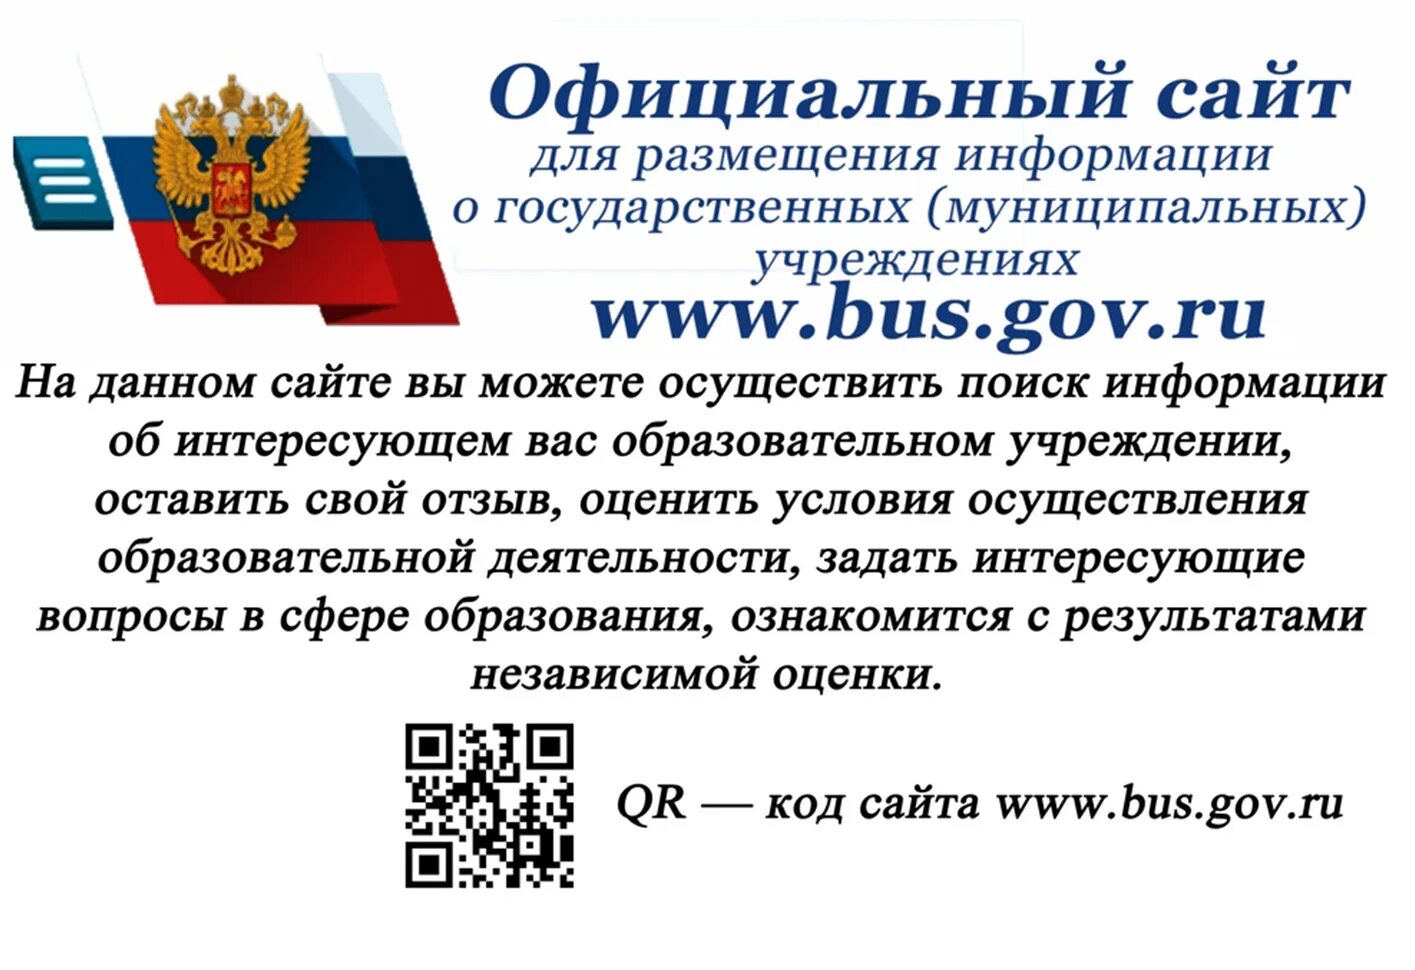 Сайт для размещения информации о государственных учреждениях. Bus.gov.ru баннер. Независимая оценка качества образовательных услуг. Https://Bus.gov.ru/. Размещение информации.